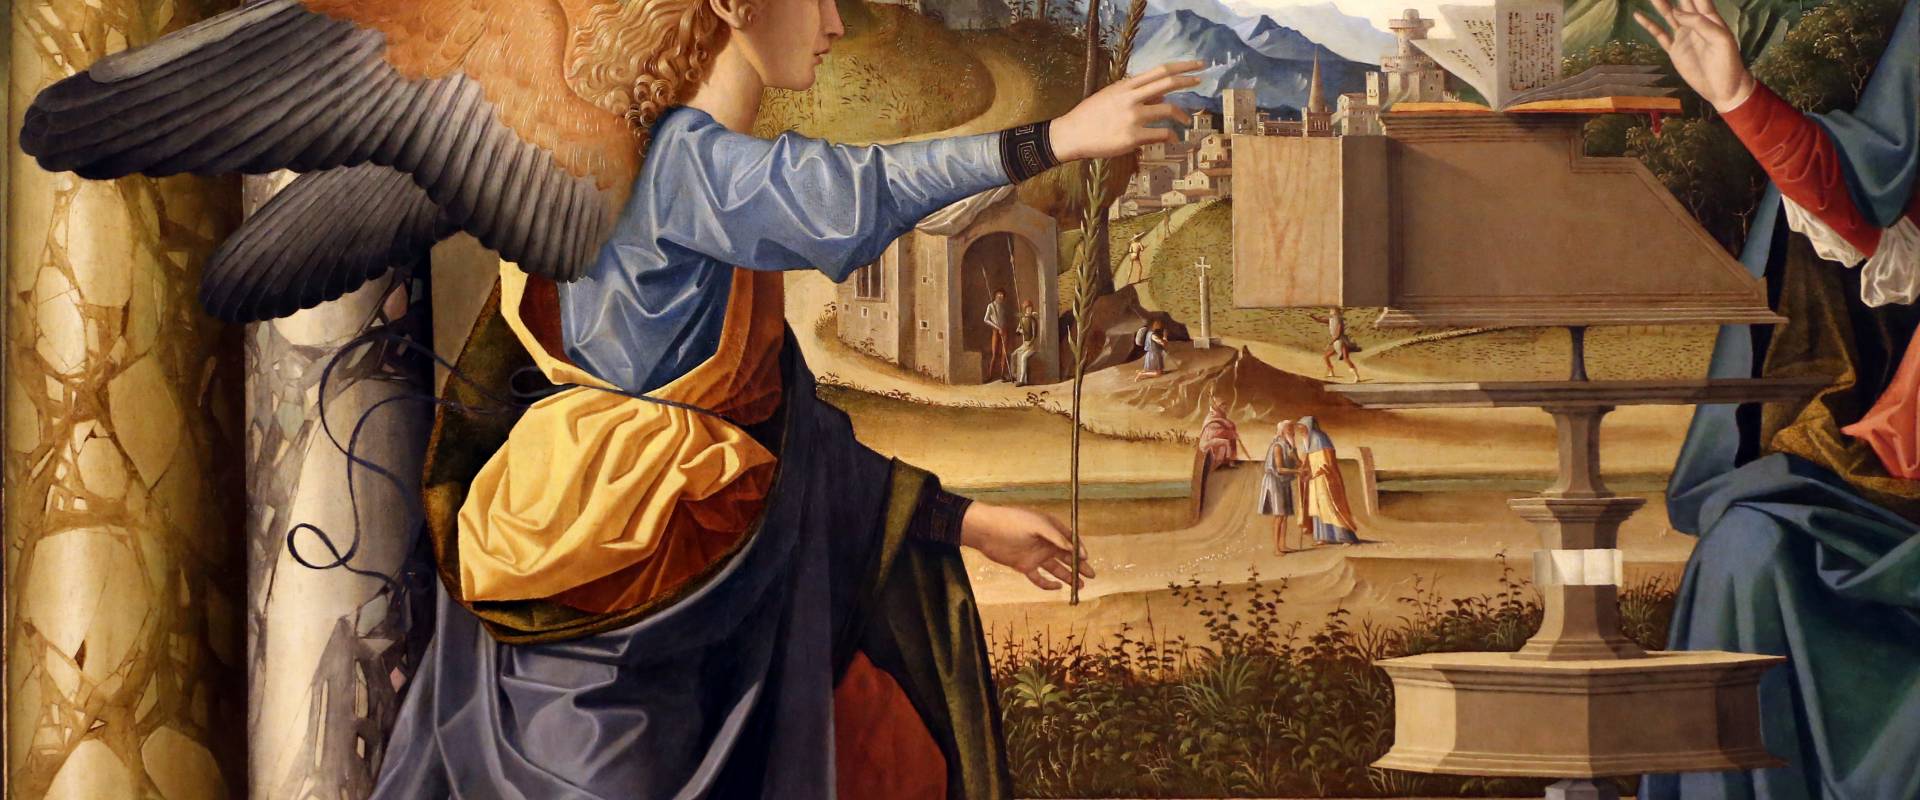 Marco palmezzano, annunciazione, 1495-97 ca., da s.m. del carmine a forlì, 03 foto di Sailko